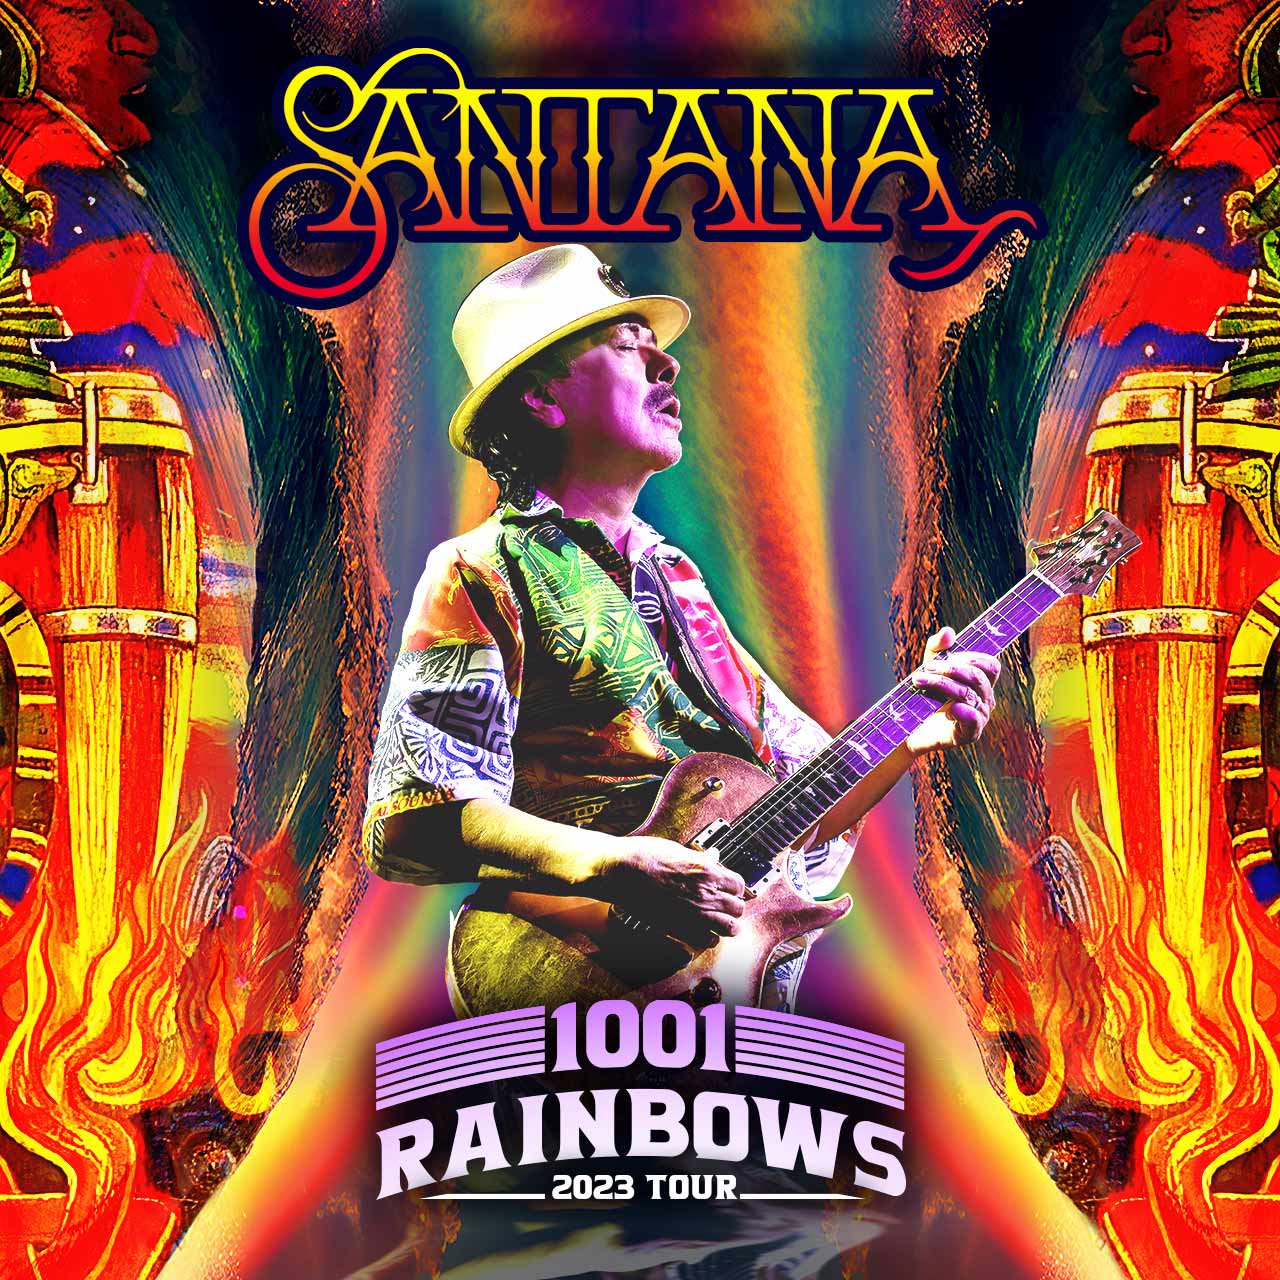 1001 Rainbows 2023 Tour